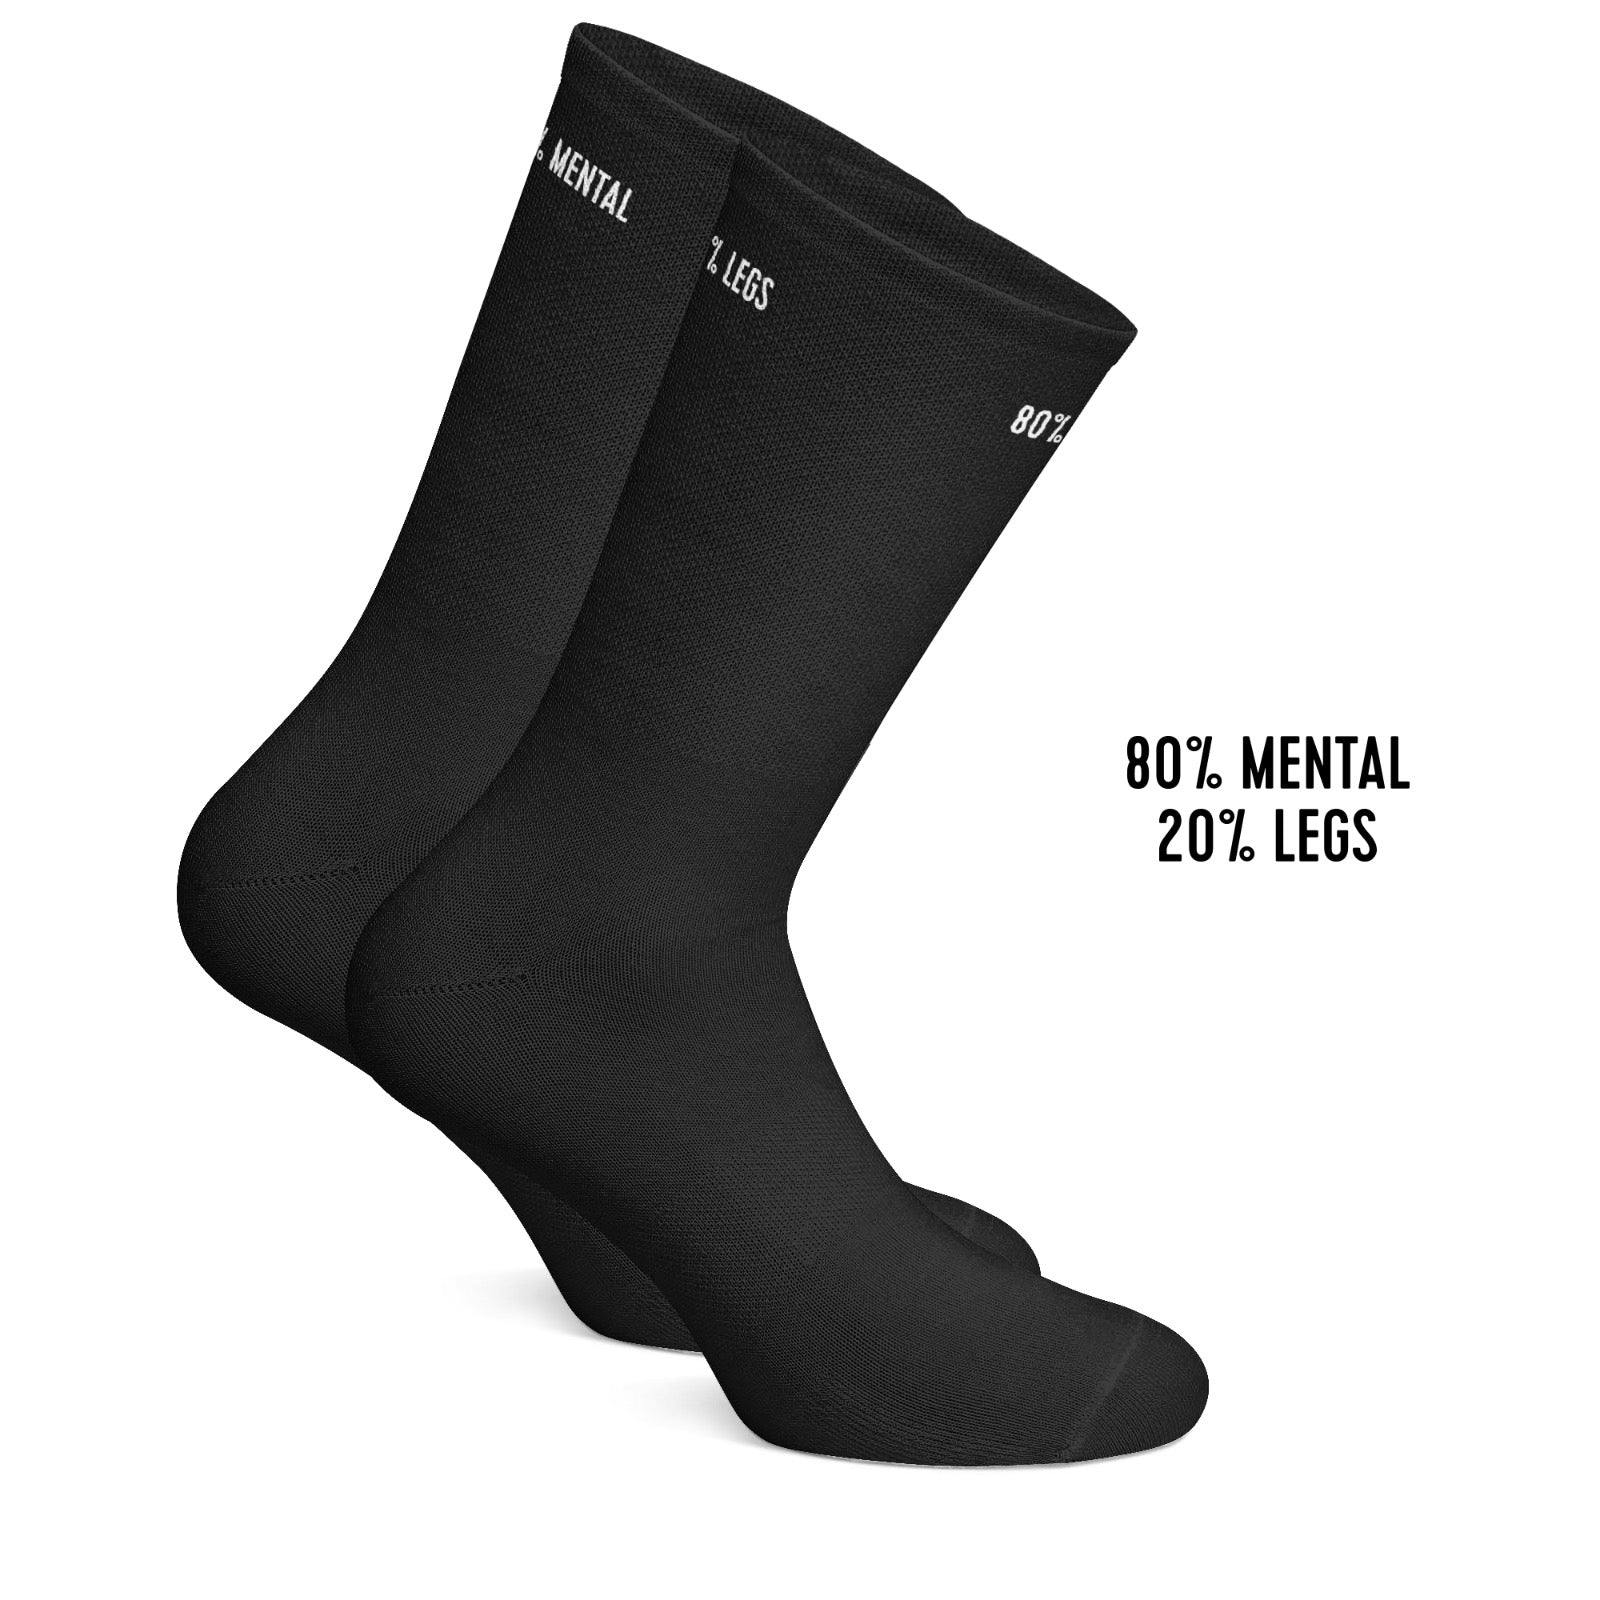 80% mental 20% legs cycling socks Black